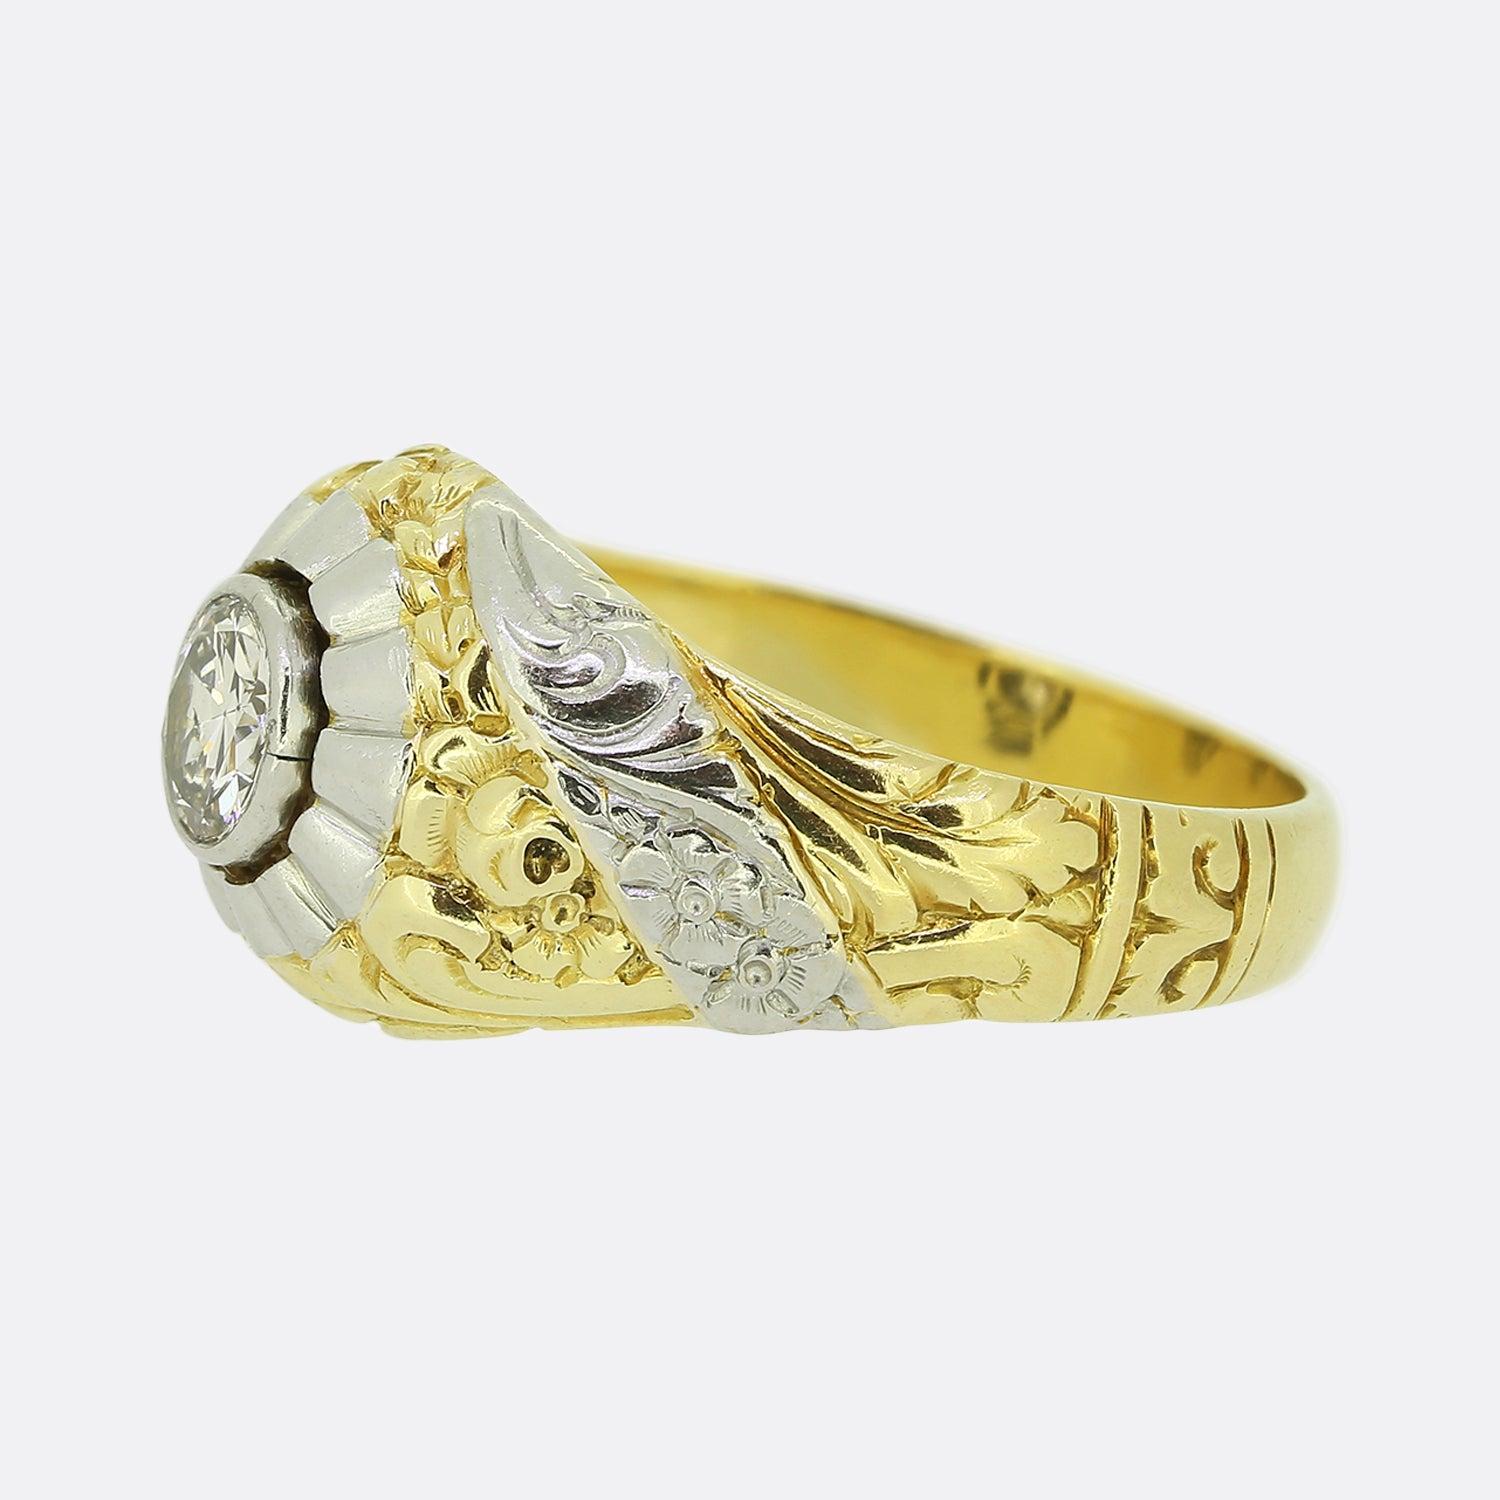 Hier haben wir einen wunderschön gearbeiteten Single Stone Ring aus den 1940er Jahren. In der Mitte der Vorderseite befindet sich ein runder Diamant im Brillantschliff in einer Rub-Over-Fassung. Seinen wahren Charakter erhält das schwere